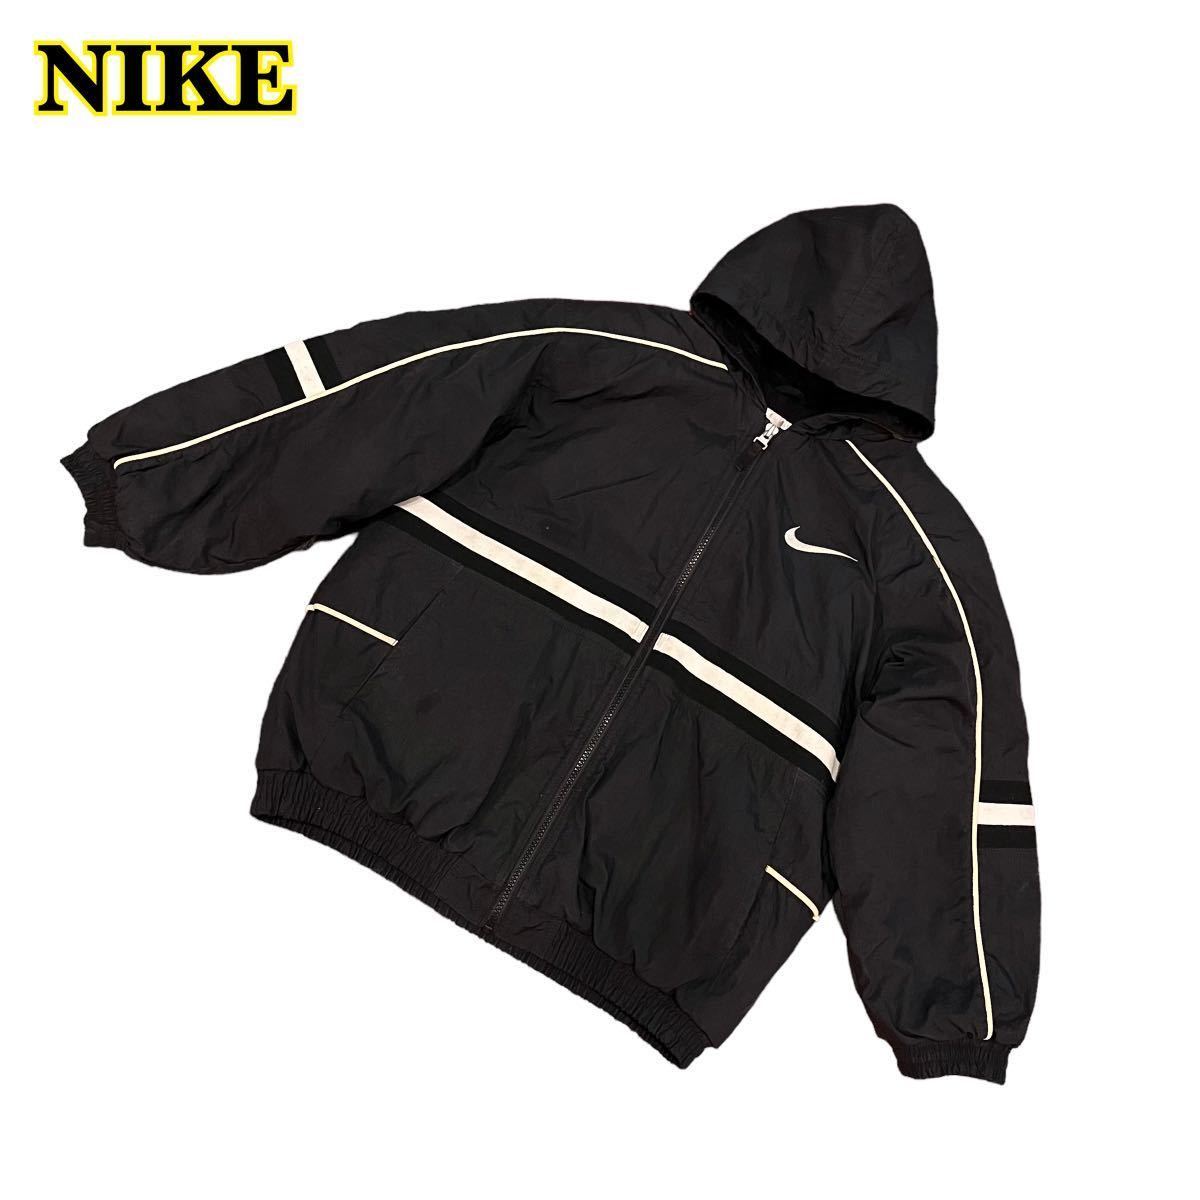 NIKE Nike с хлопком нейлон жакет Zip Parker вышивка Kids M размер [AY1455]